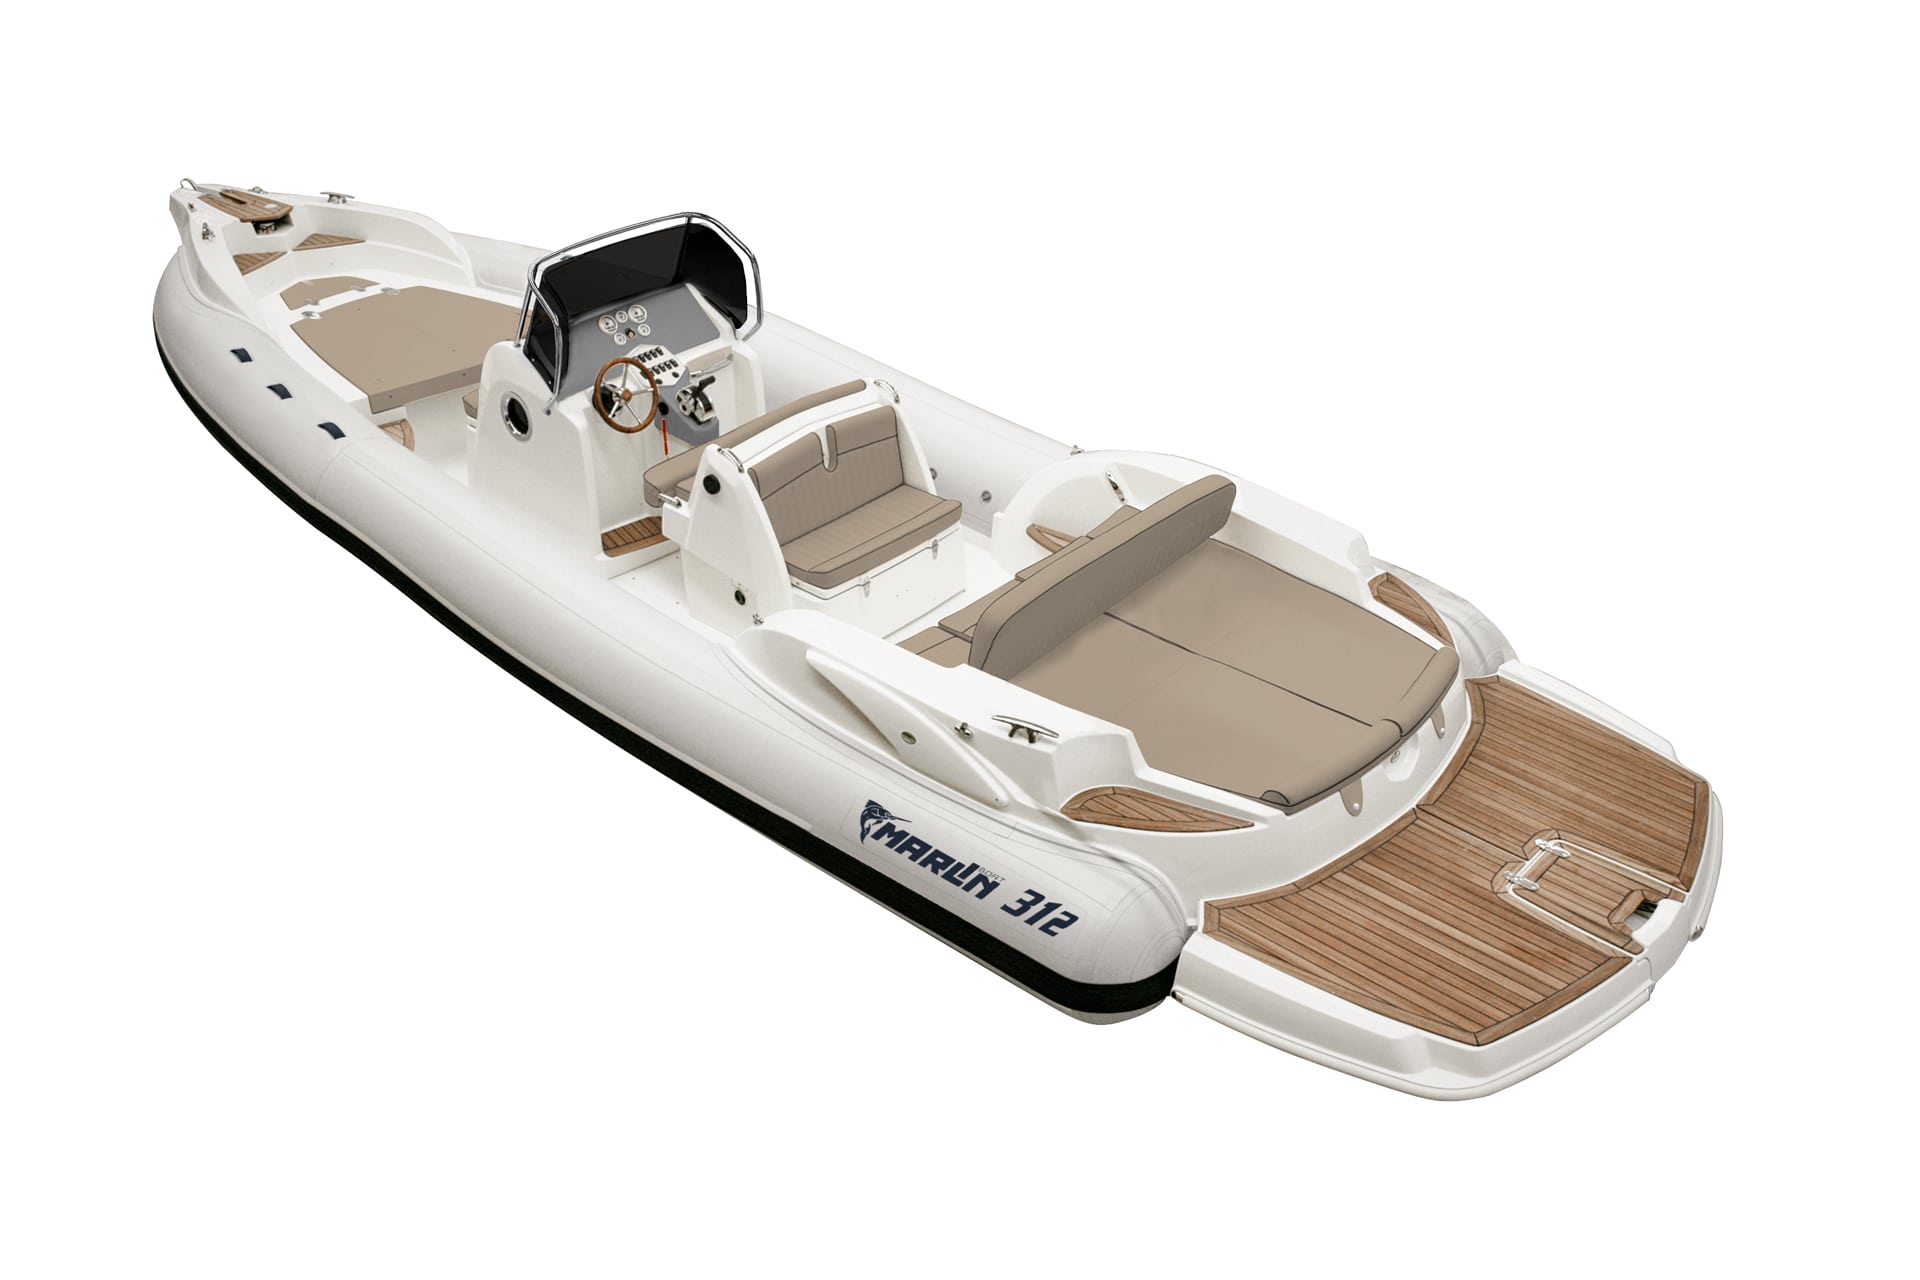 Marlin Boat - Gommone Fuoribordo Modello 26EF